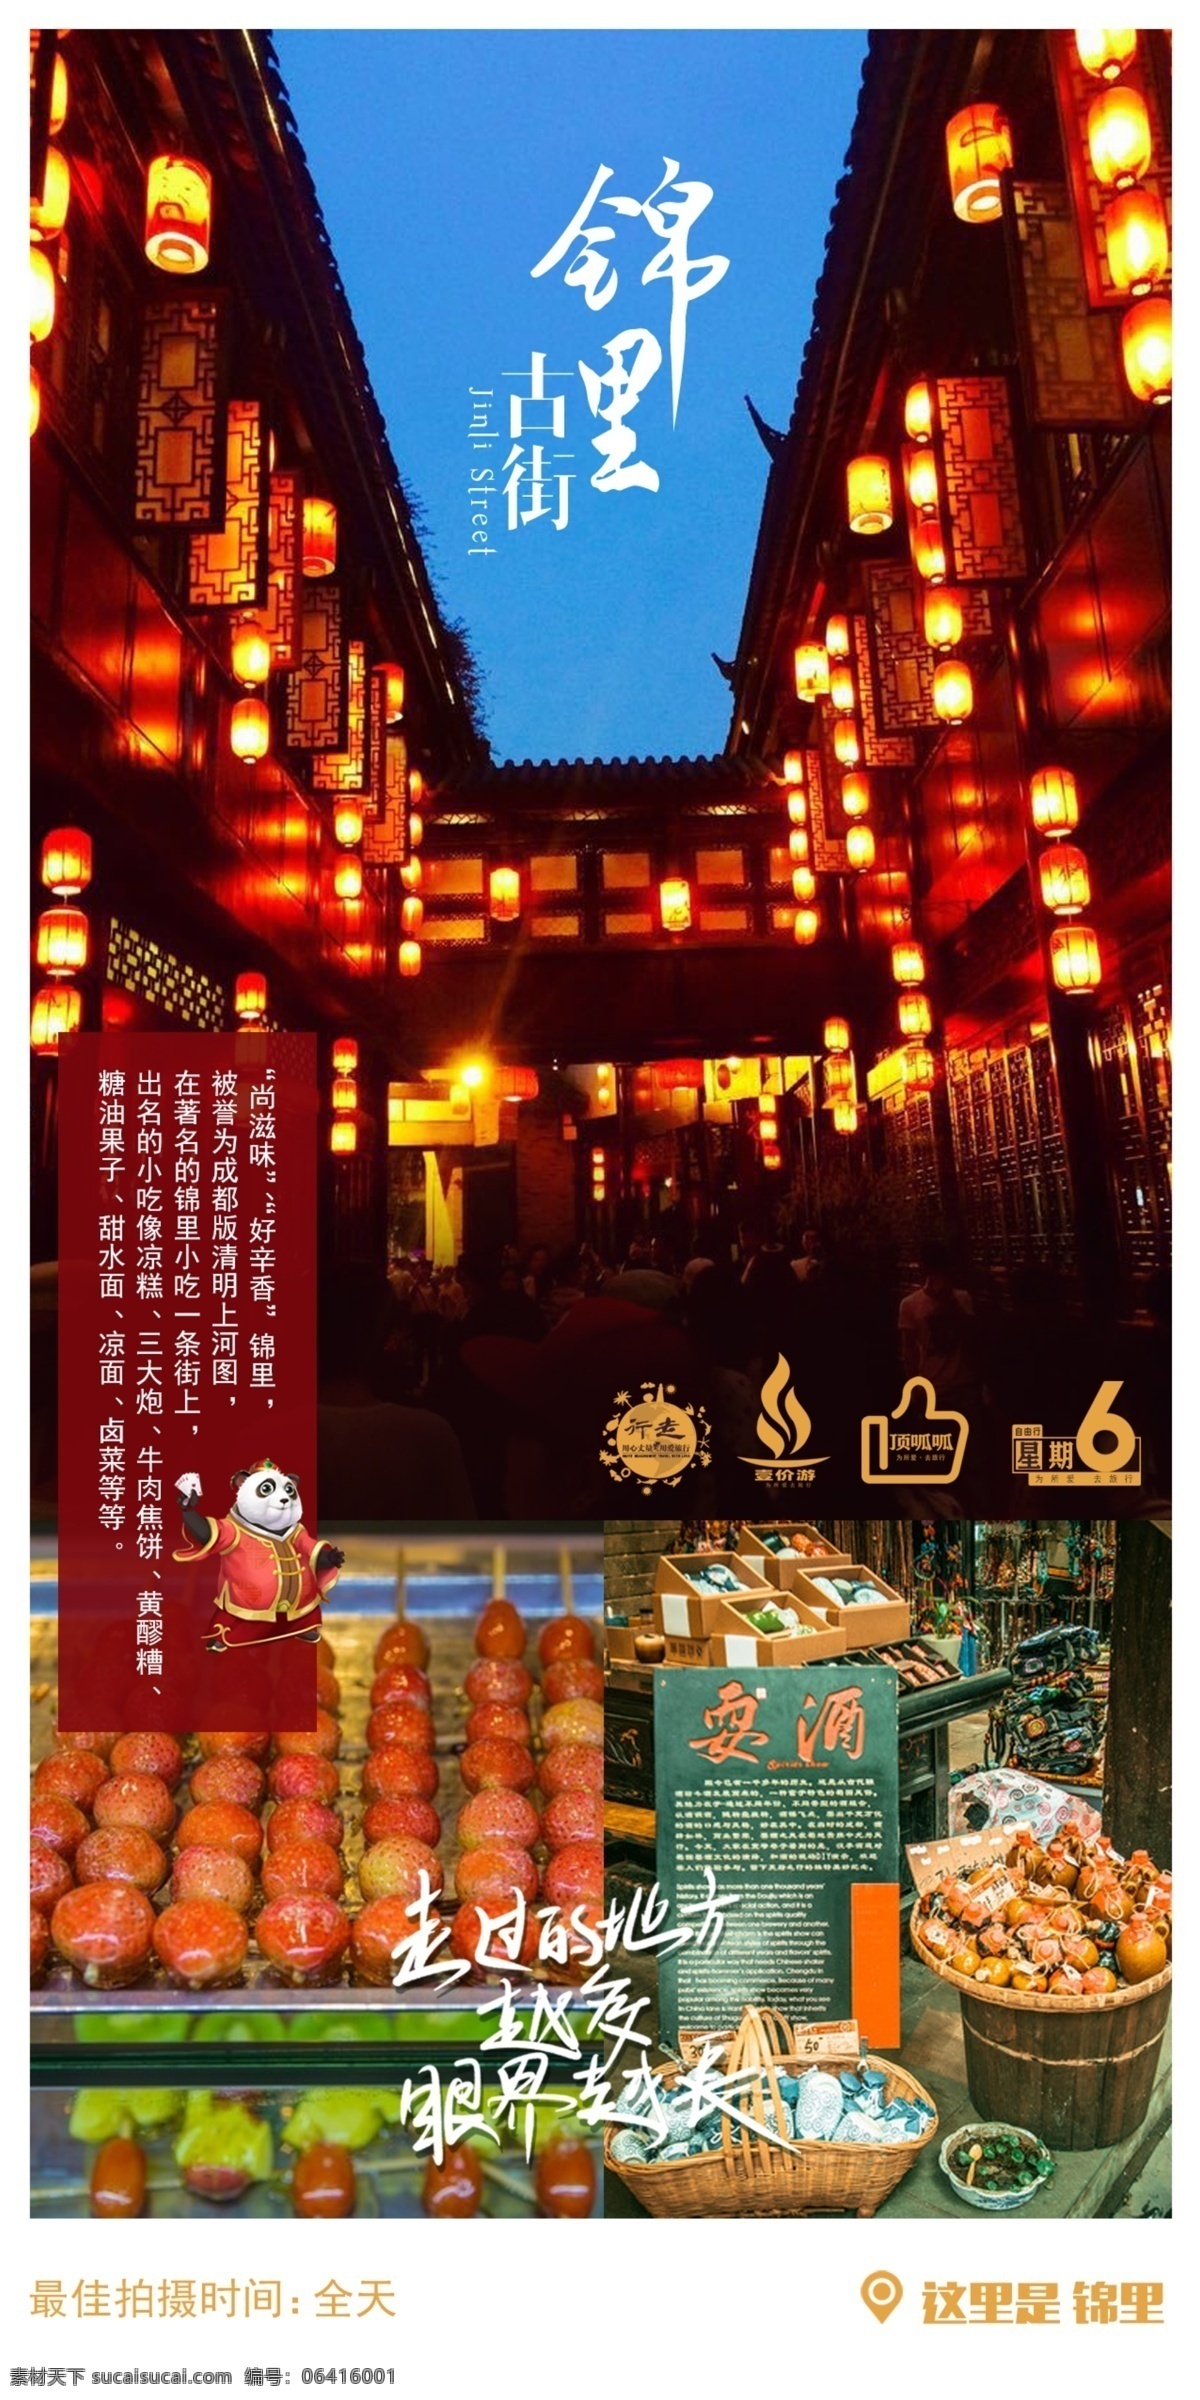 锦里古街 小吃 美食 火锅 掏耳朵 宣传 海报 旅行 计划 正能量 成都 九寨 贵州 桂林